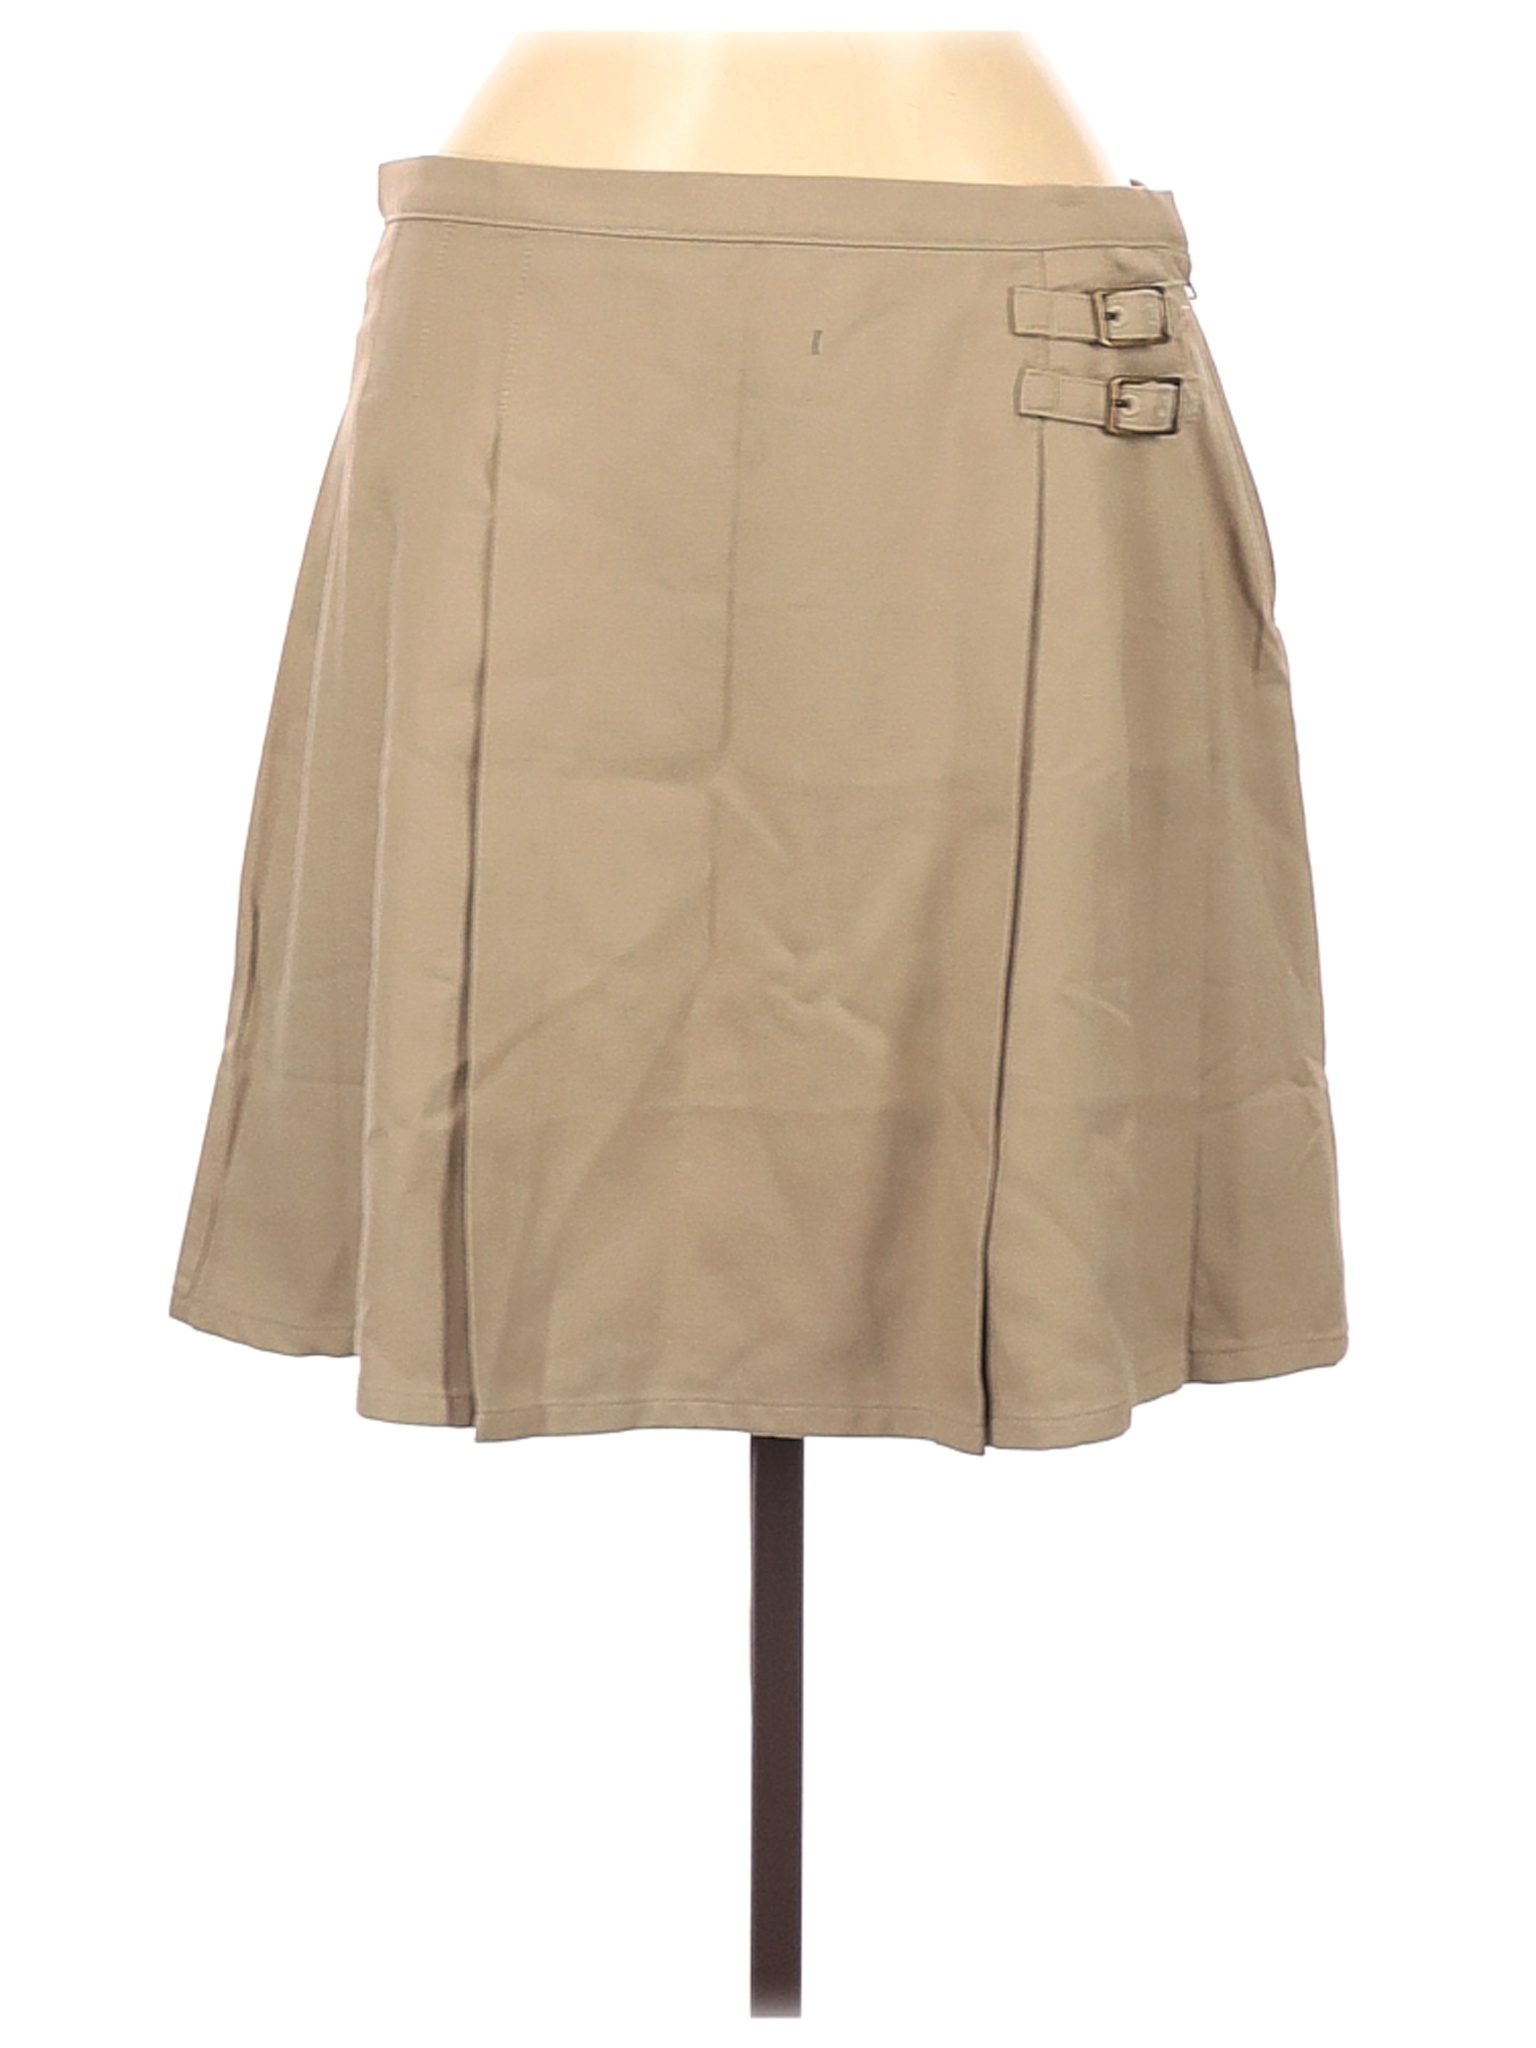 Lands' End Women Brown Casual Skirt 6 | eBay